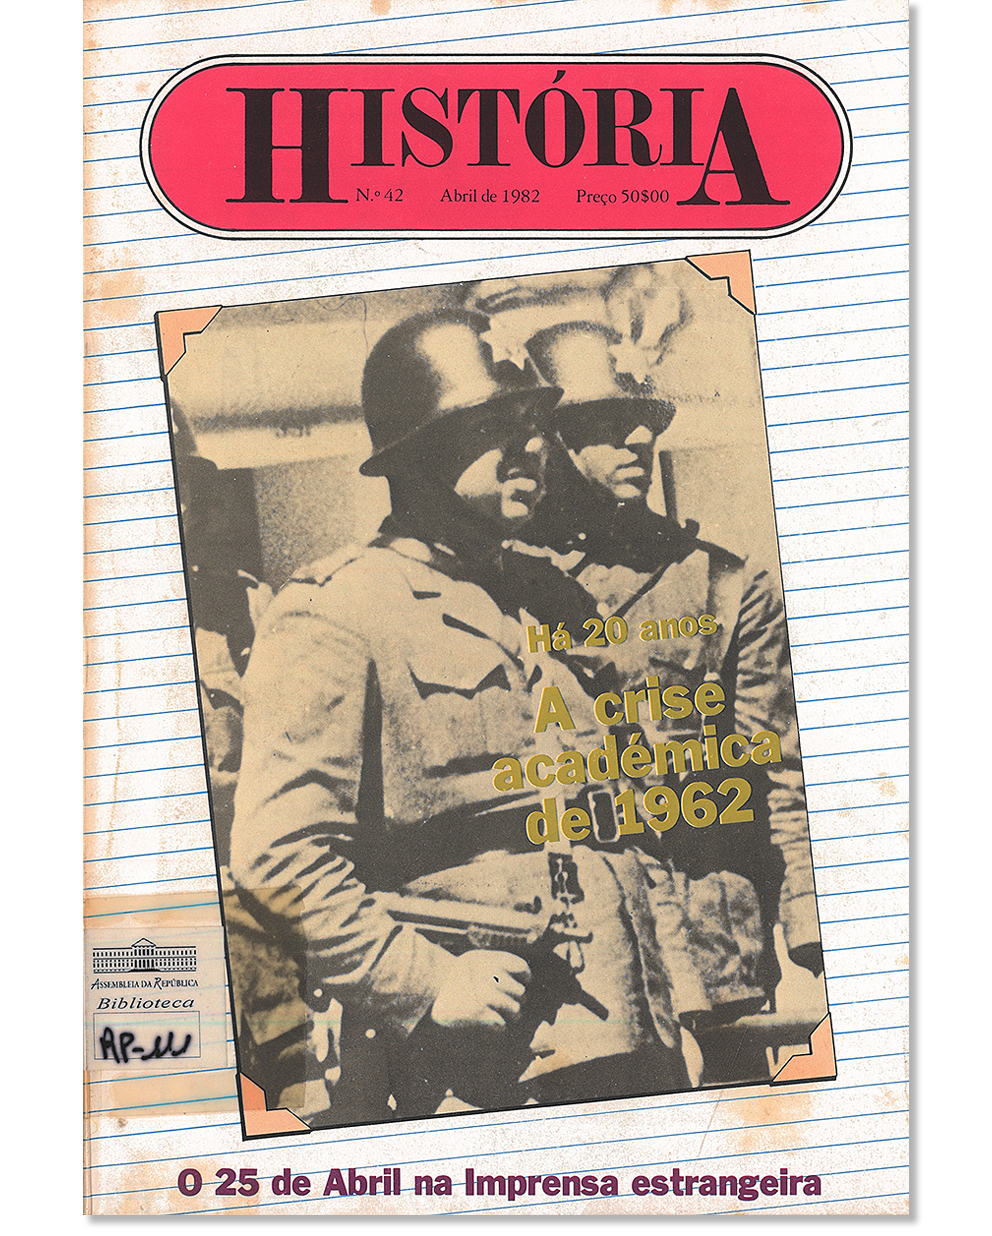 O 25 de Abril na imprensa estrangeira : como o mundo redescobriu Portugal. História. N.º 42 (abr. 1982), p. 30-39